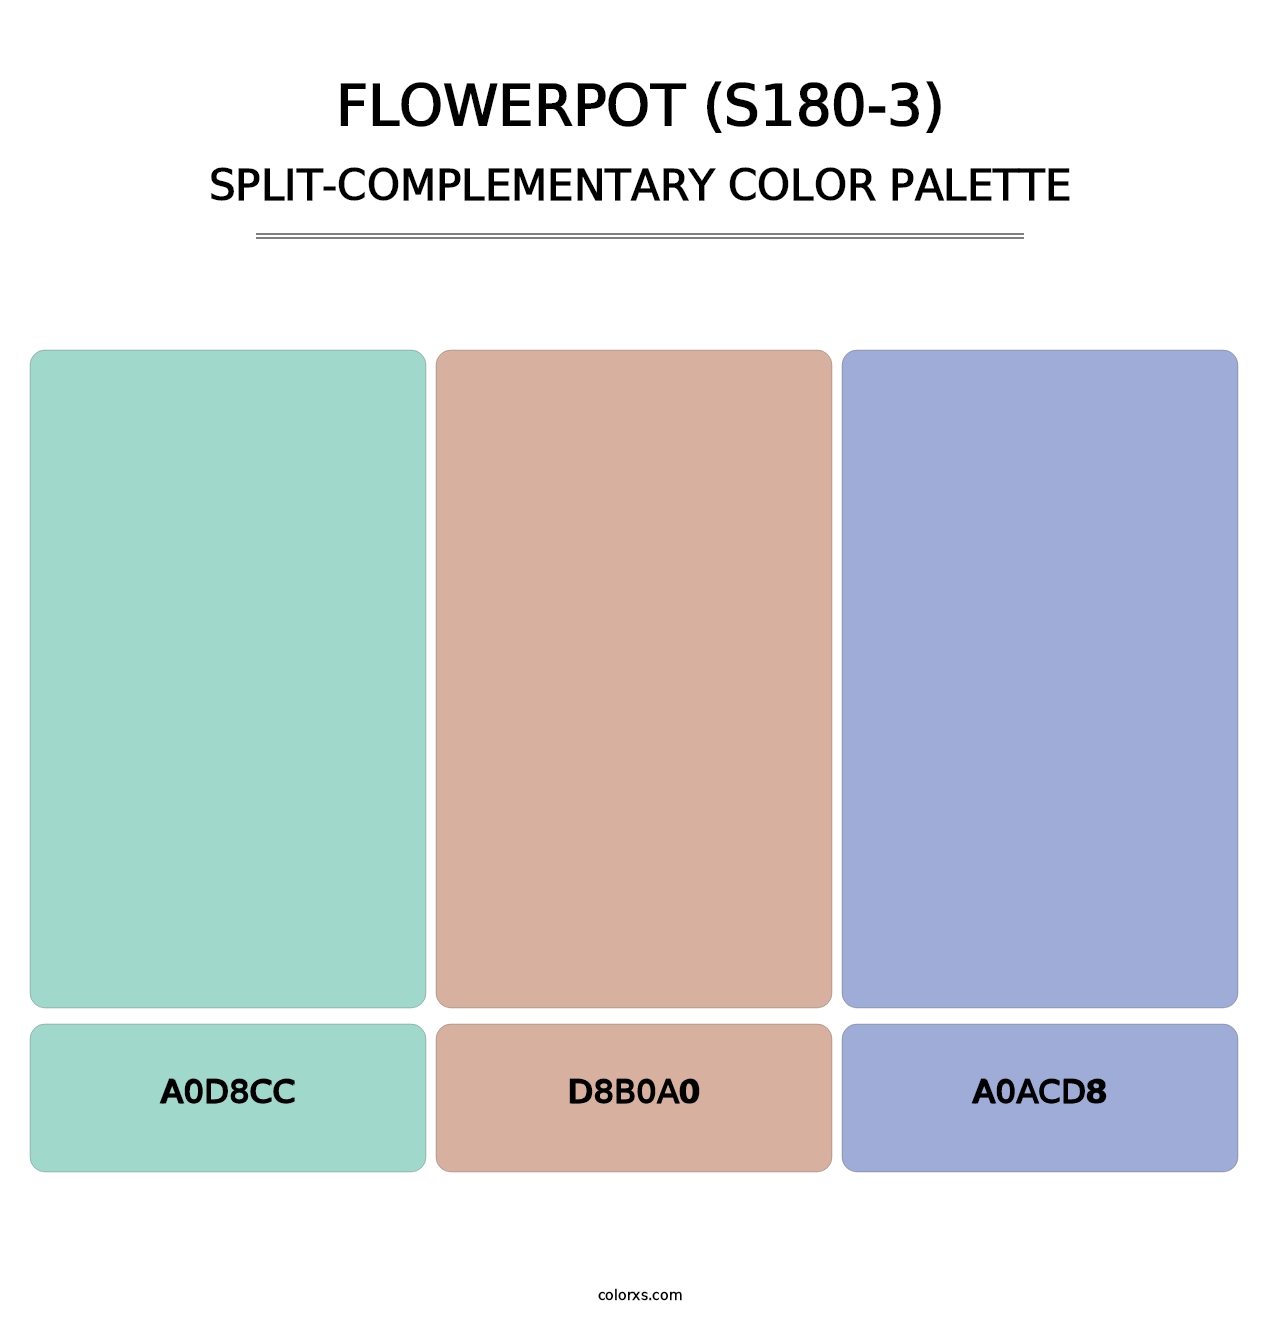 Flowerpot (S180-3) - Split-Complementary Color Palette